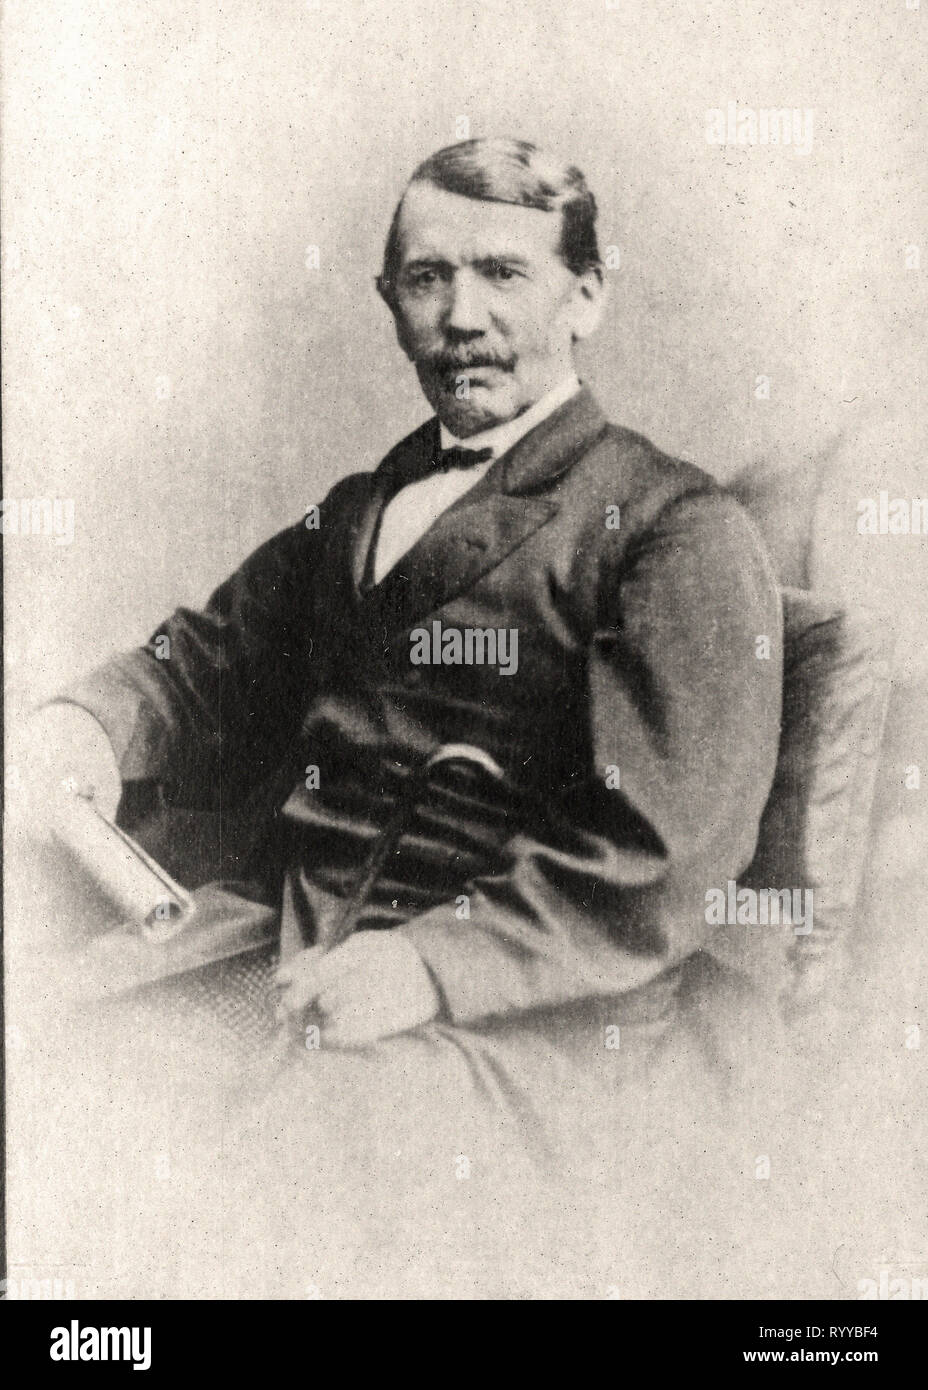 Retrato fotográfico de Livingstone de la colección Félix Potin, de principios del siglo XX. Foto de stock